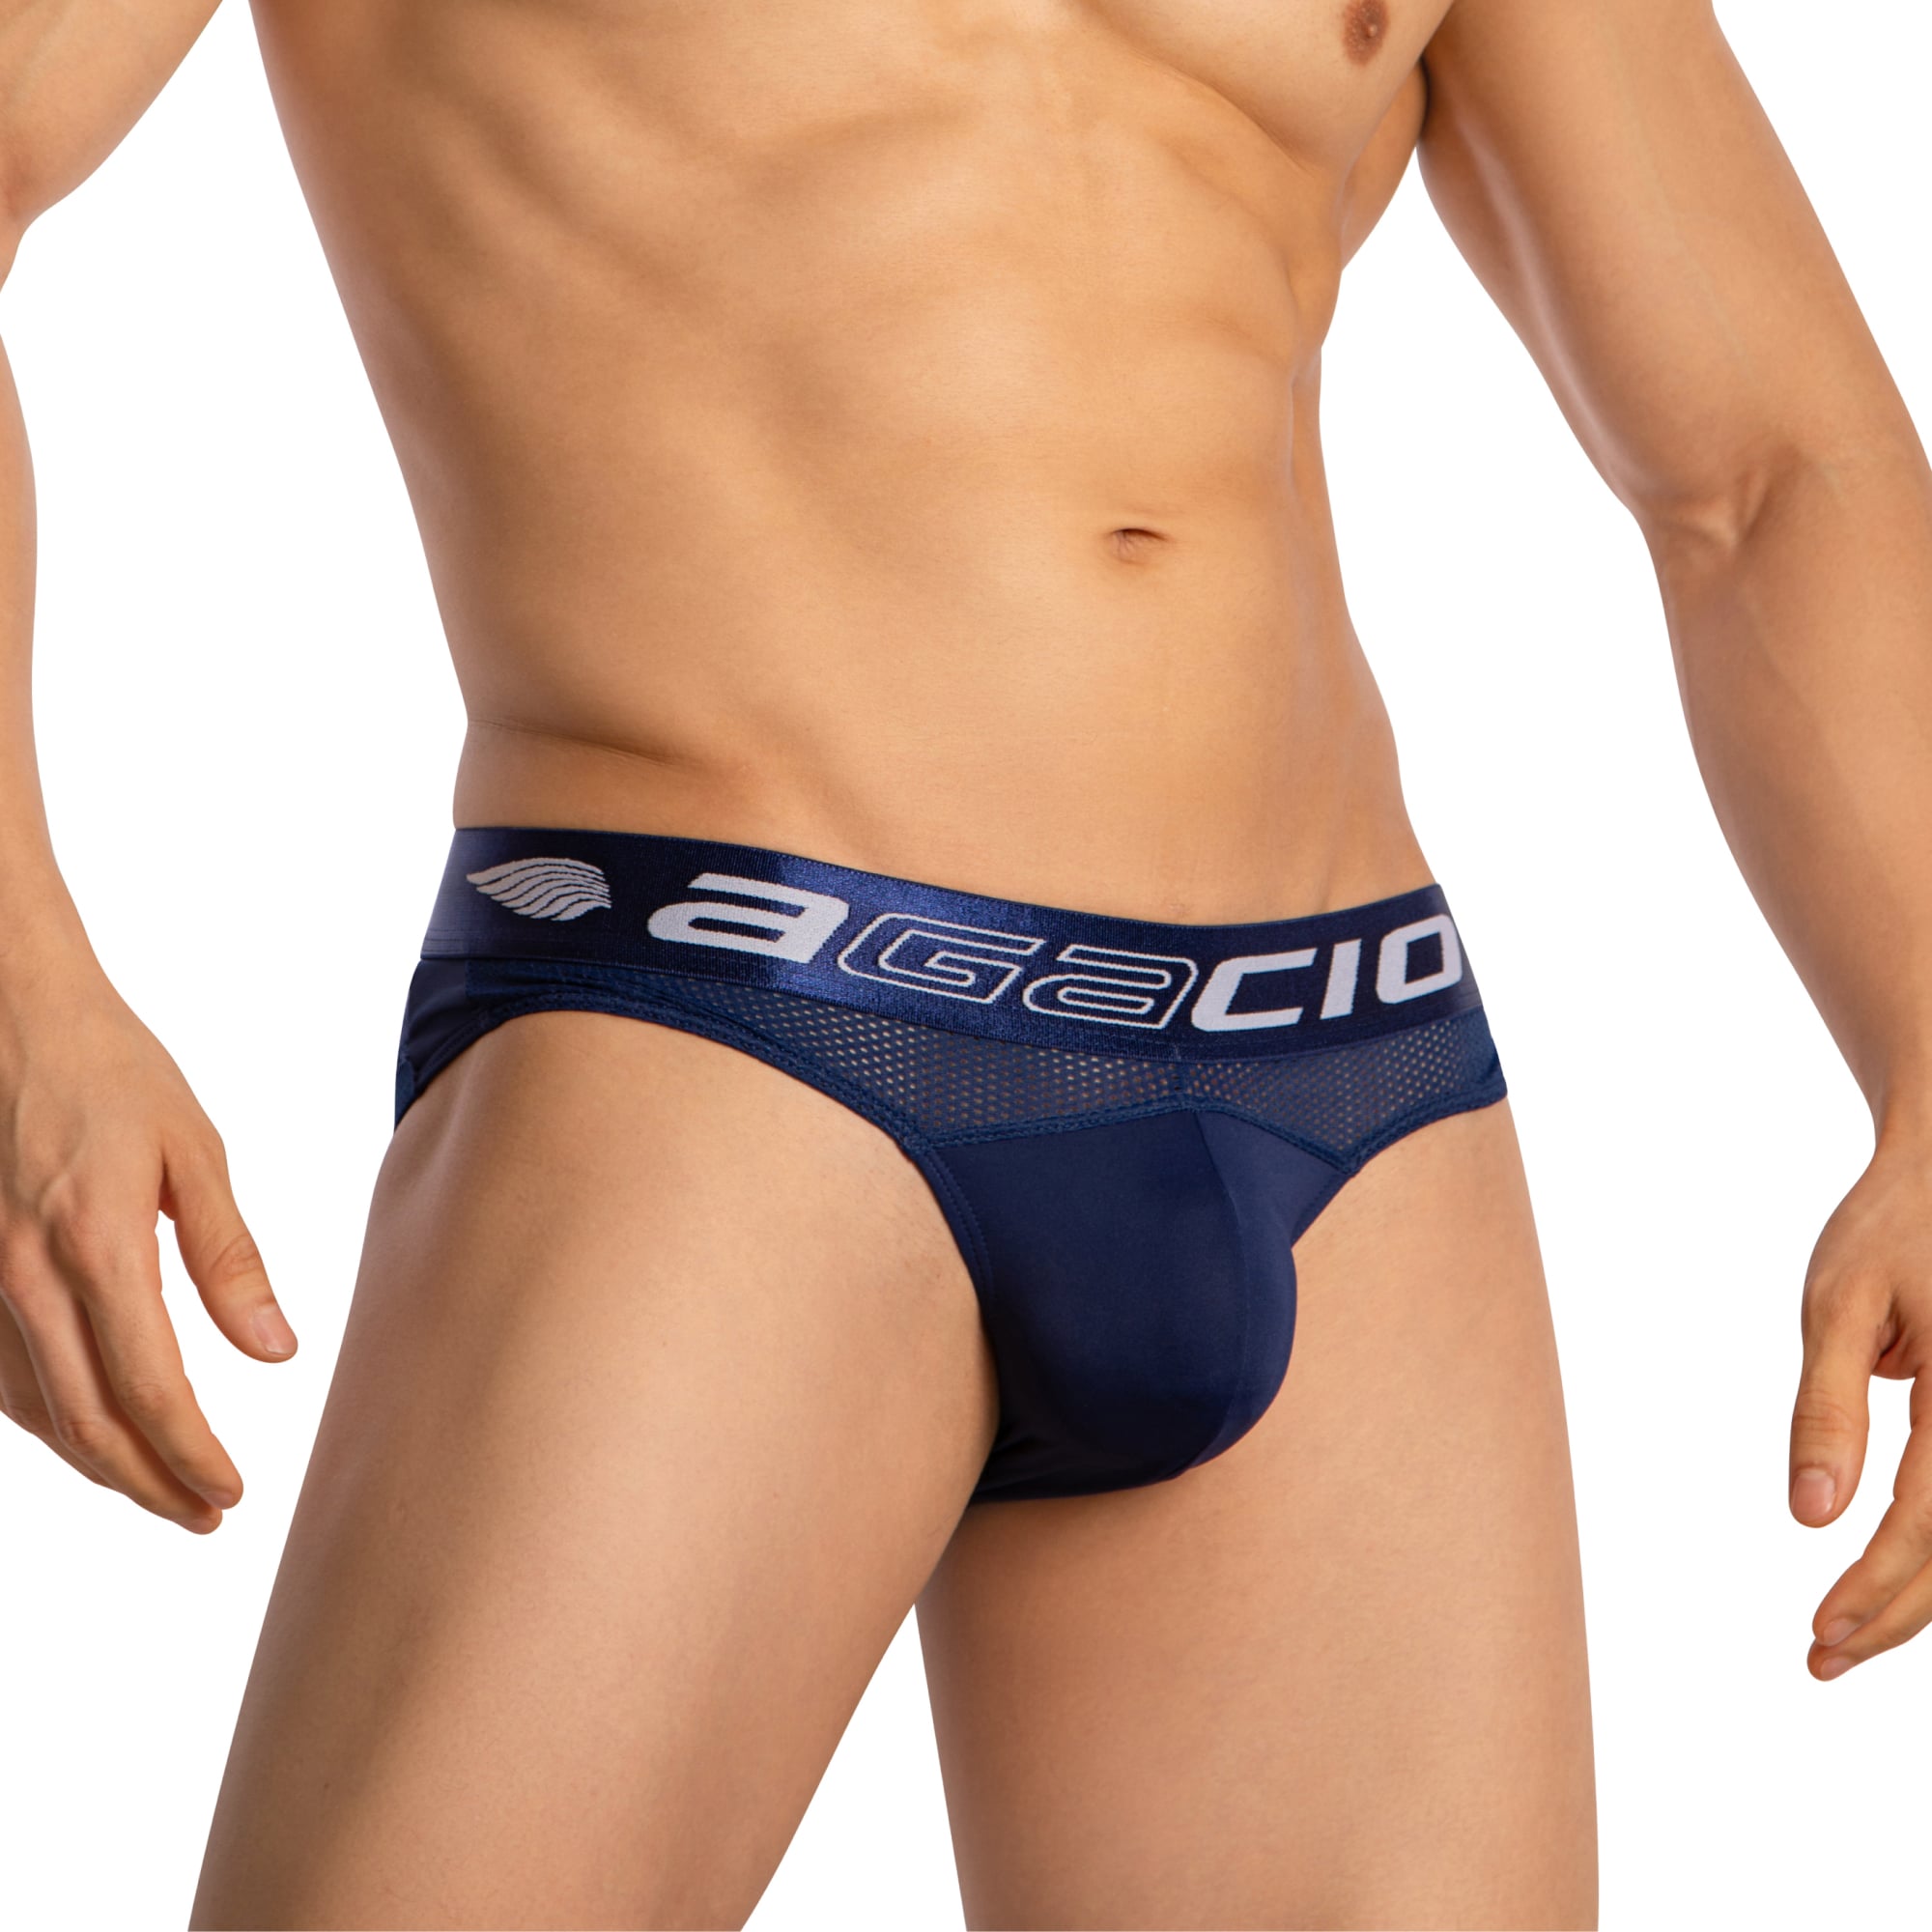 Agacio Men's Sheer Thongs AGJ042 Daring Men's Undergarments